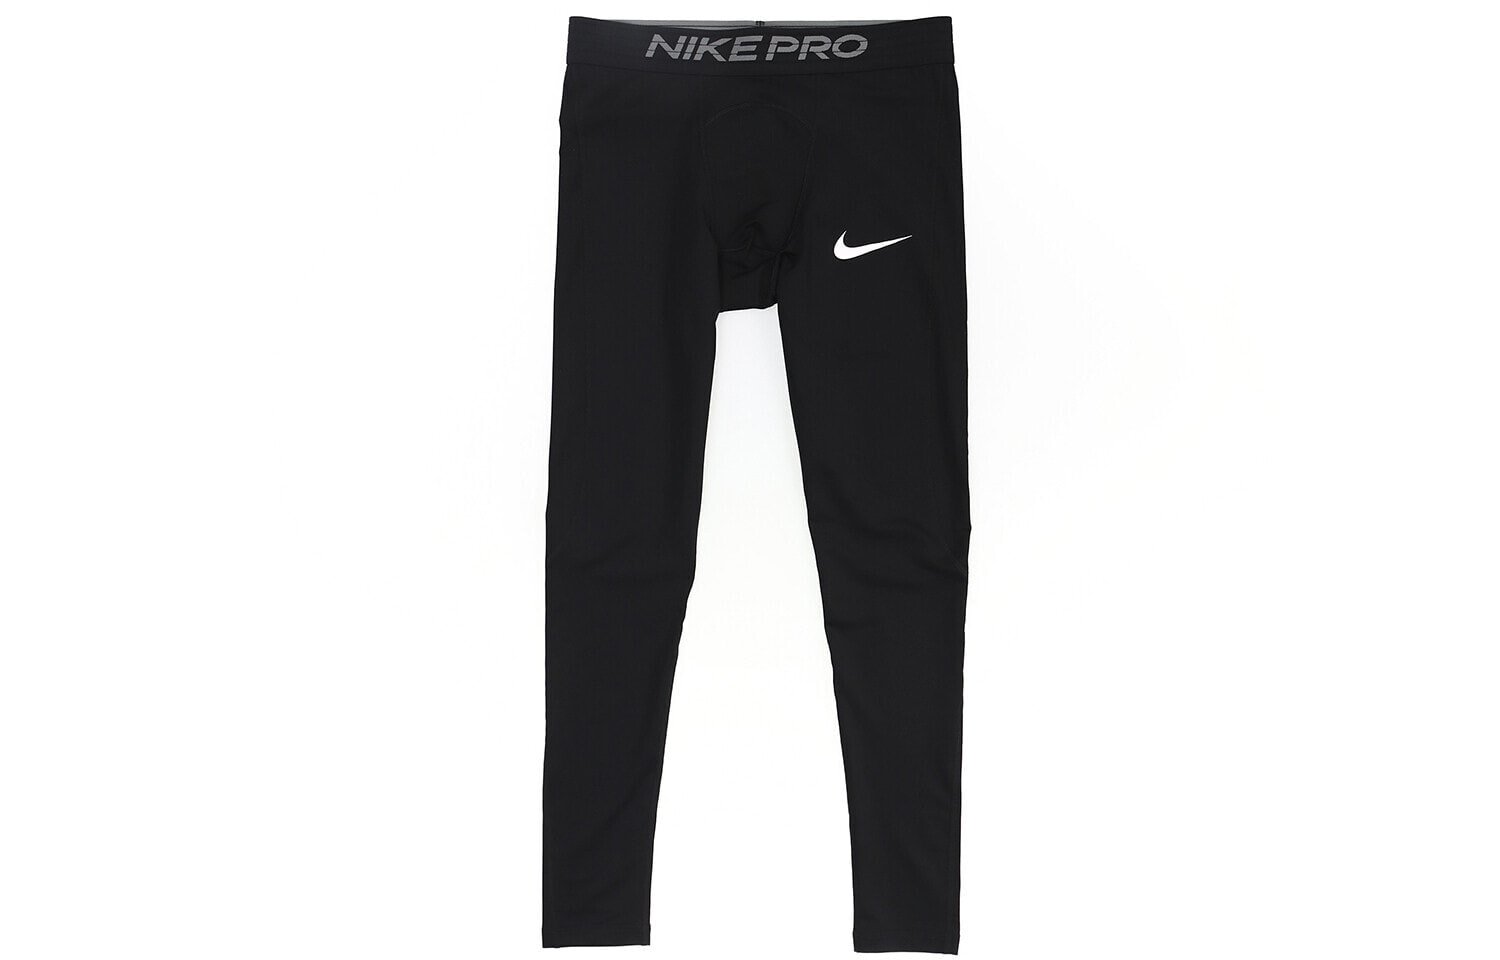 Nike Pro Dri-Fit 字母Logo印花健身裤 男款 黑色 / Трендовая спортивная одежда Nike Pro Dri-Fit Логотип BV5642-010